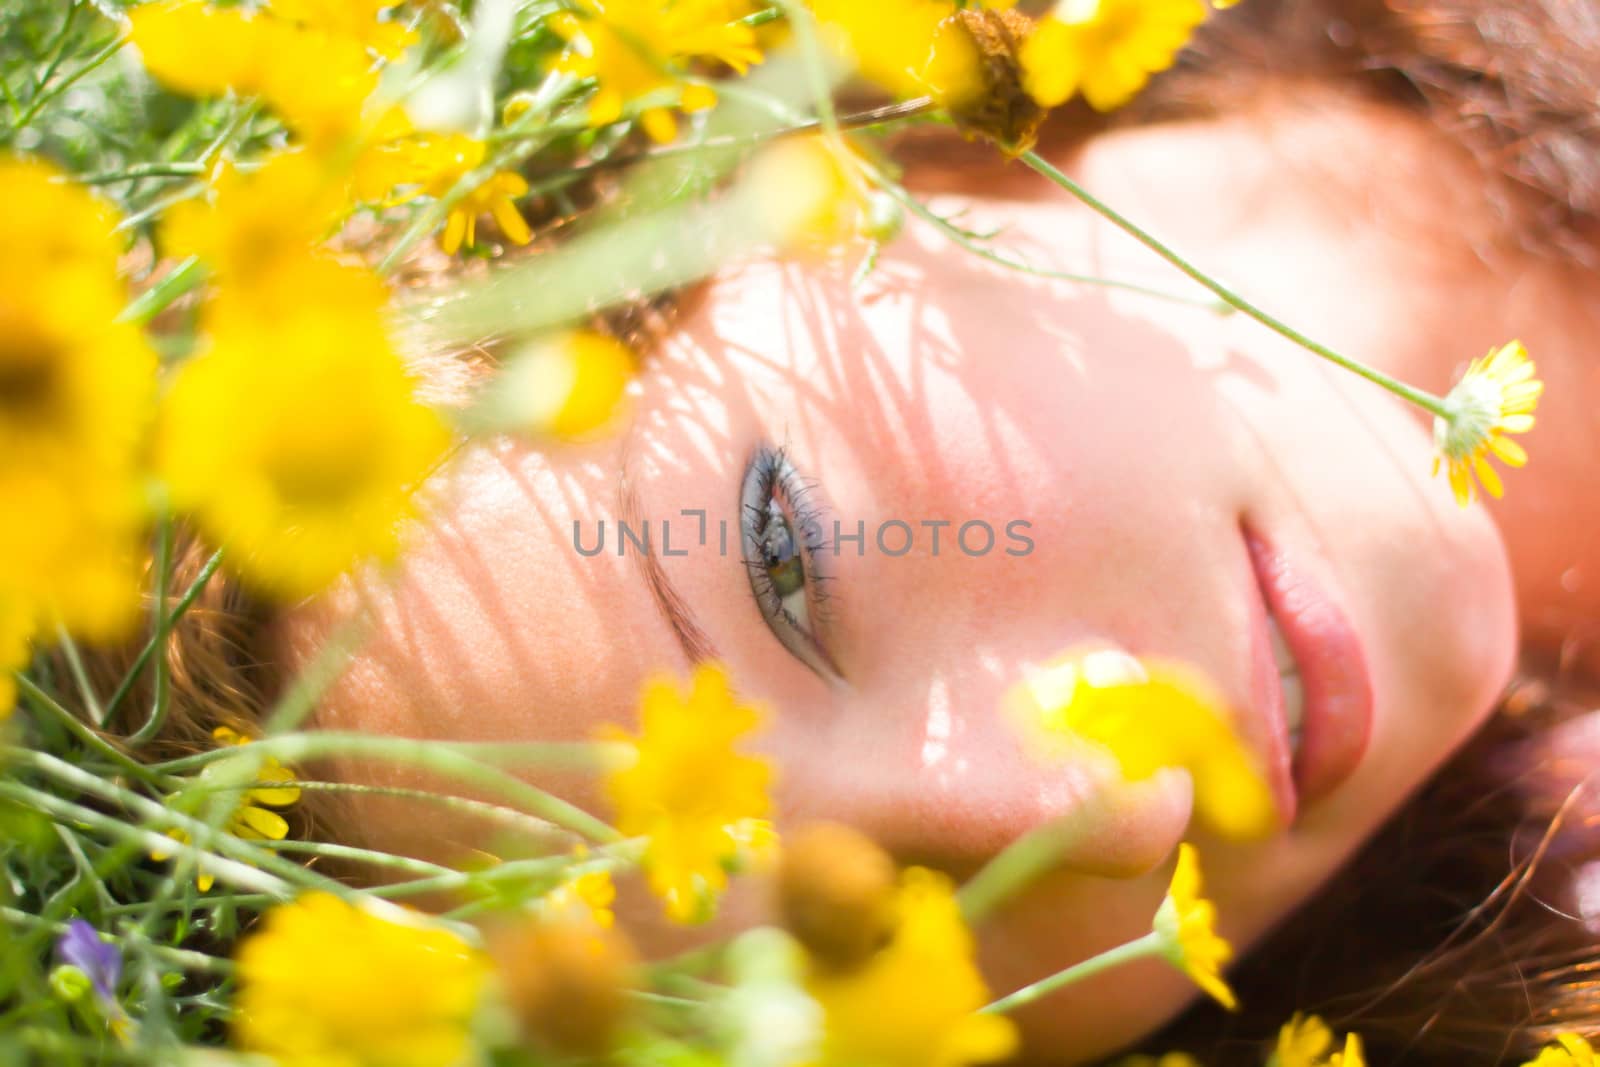 Beautiful girl laying on a field among fresh grass & yellow flowers.